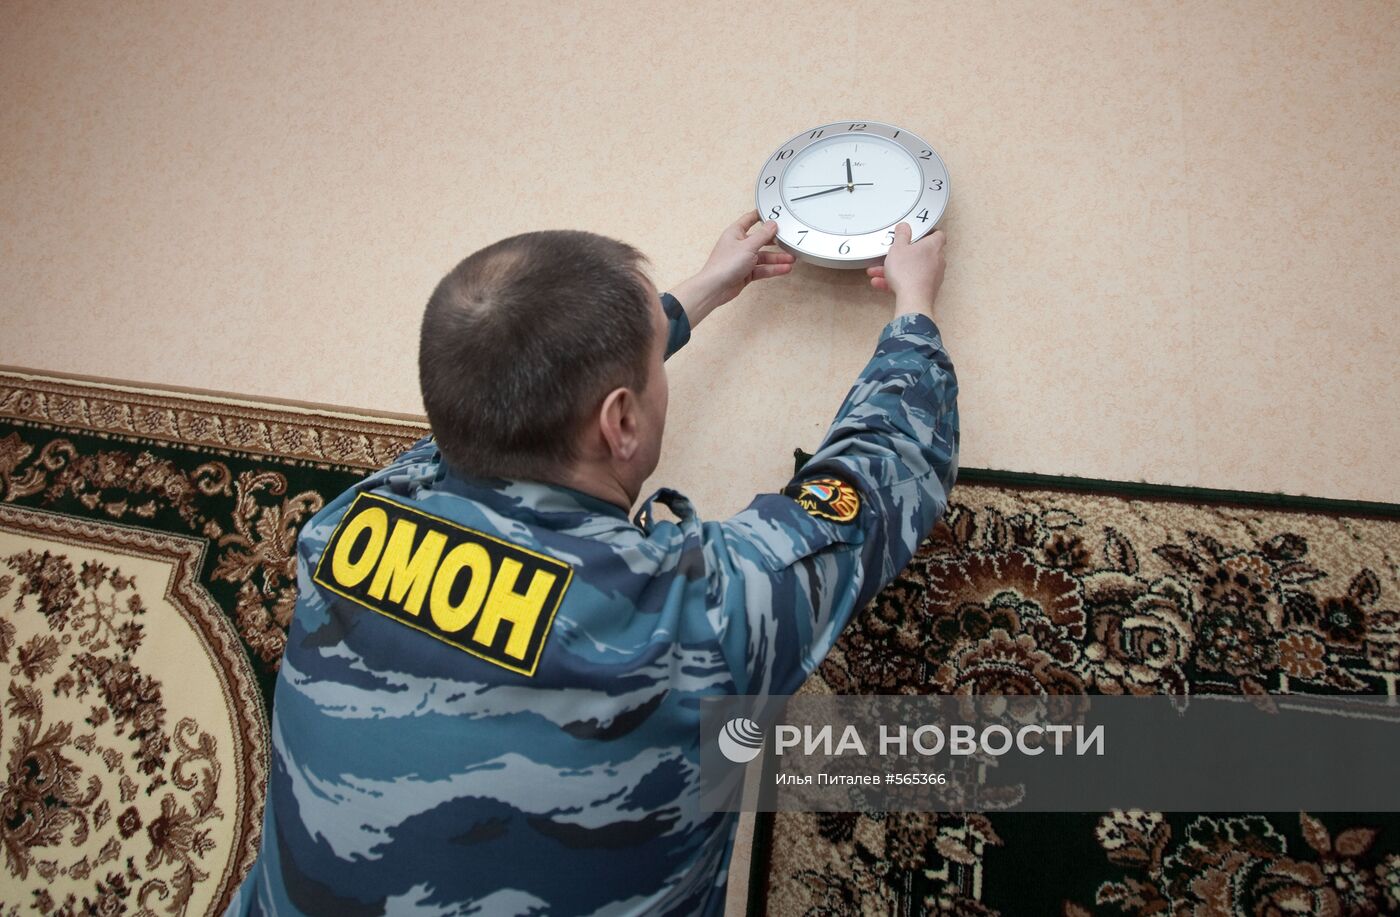 Новое общежитие для бойцов ОМОНа в Москве